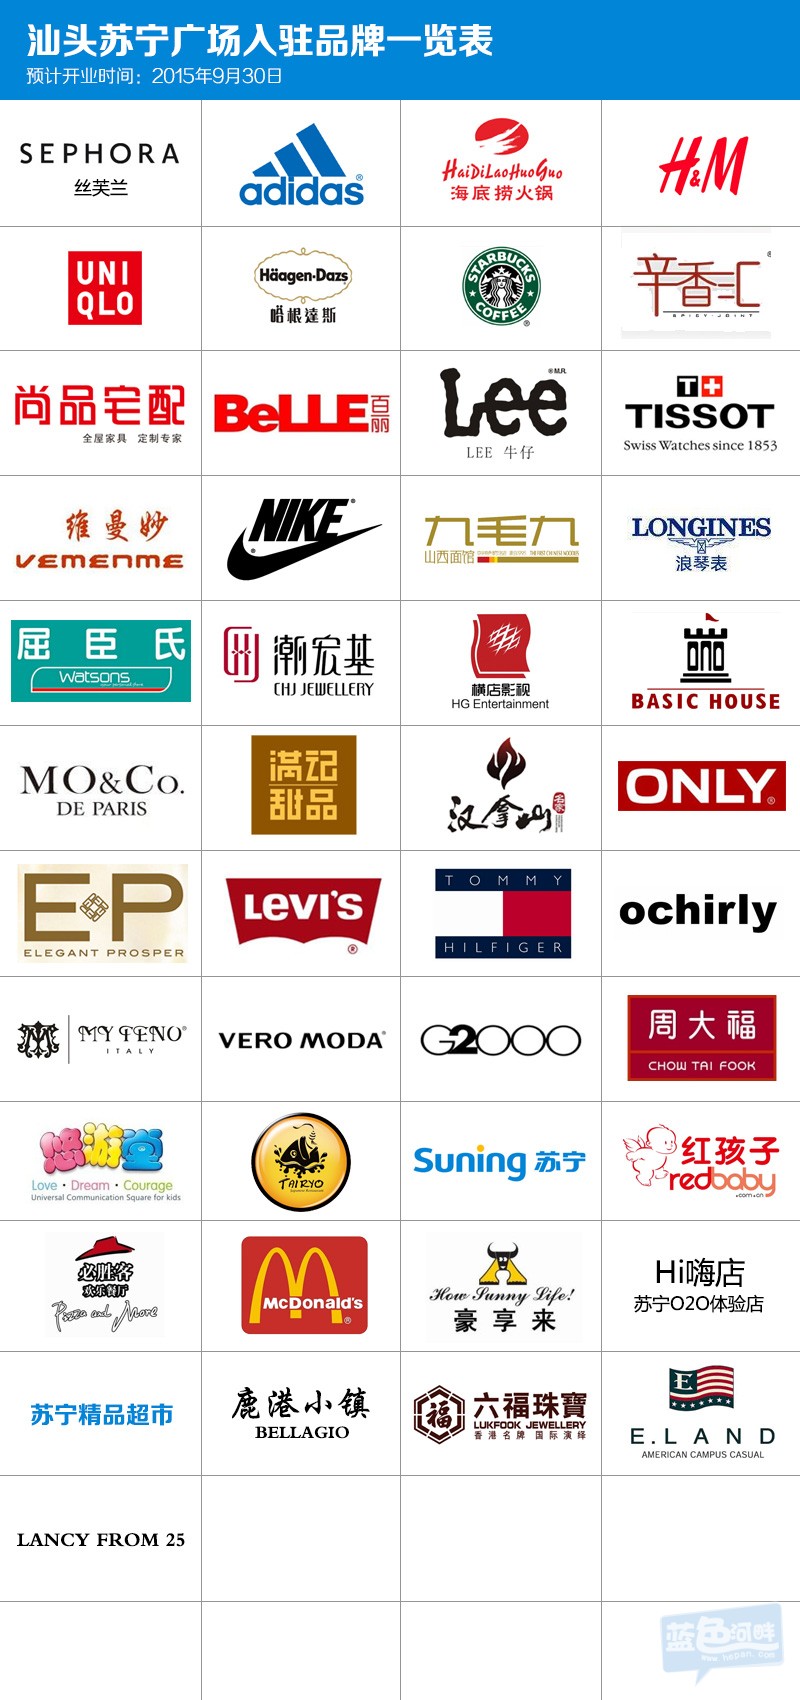 苏宁广场入驻品牌一览表,看看有没有你喜欢的品牌